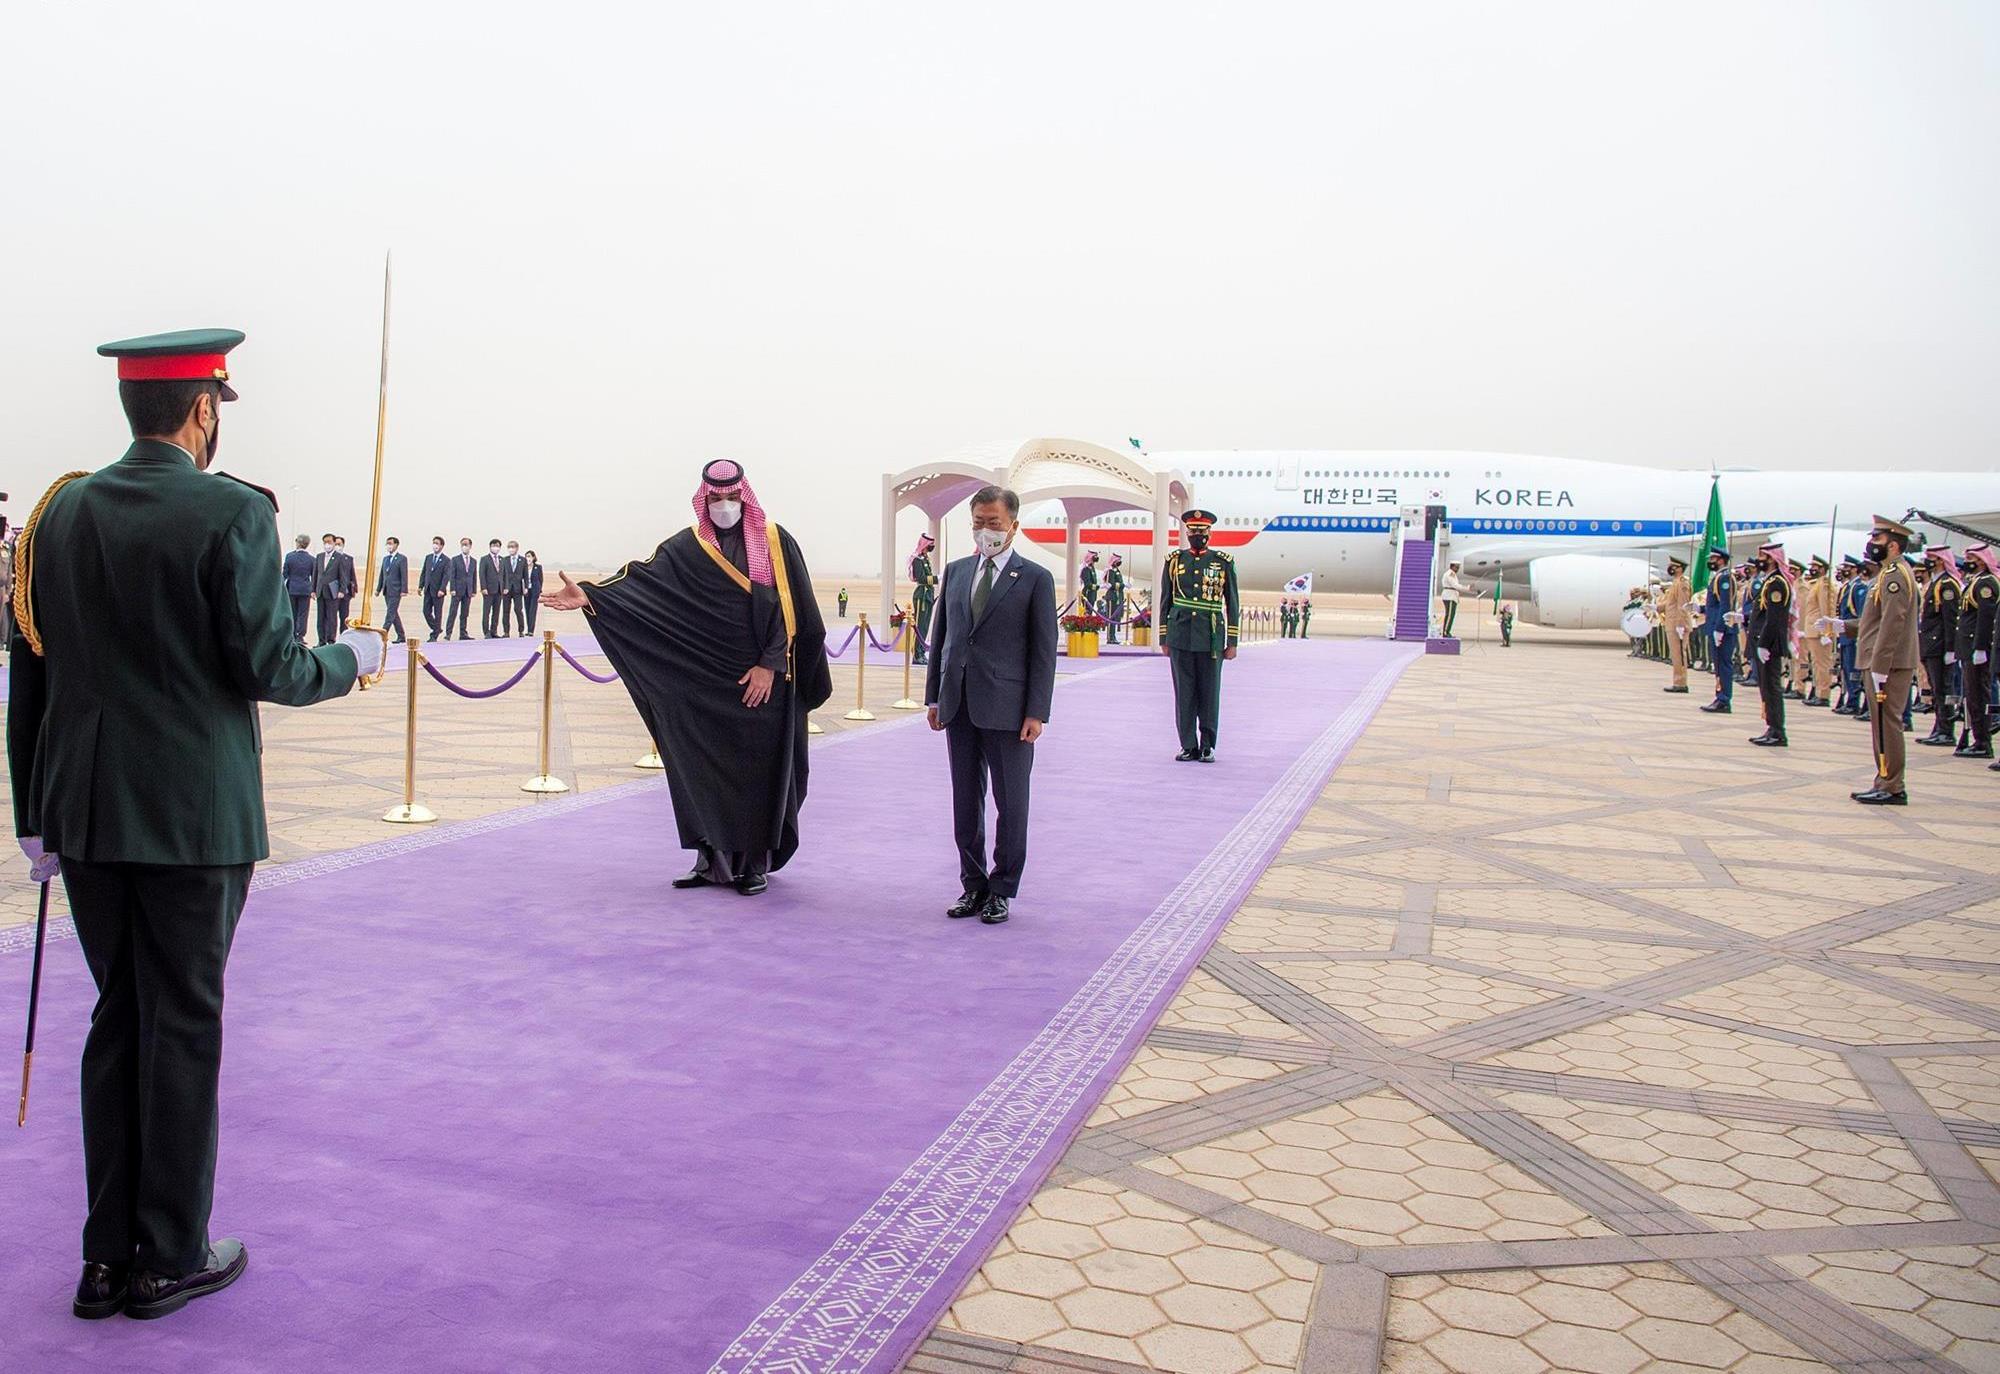 من مراسم استقال الرئيس الكوري في السعودية- الصورة من واس